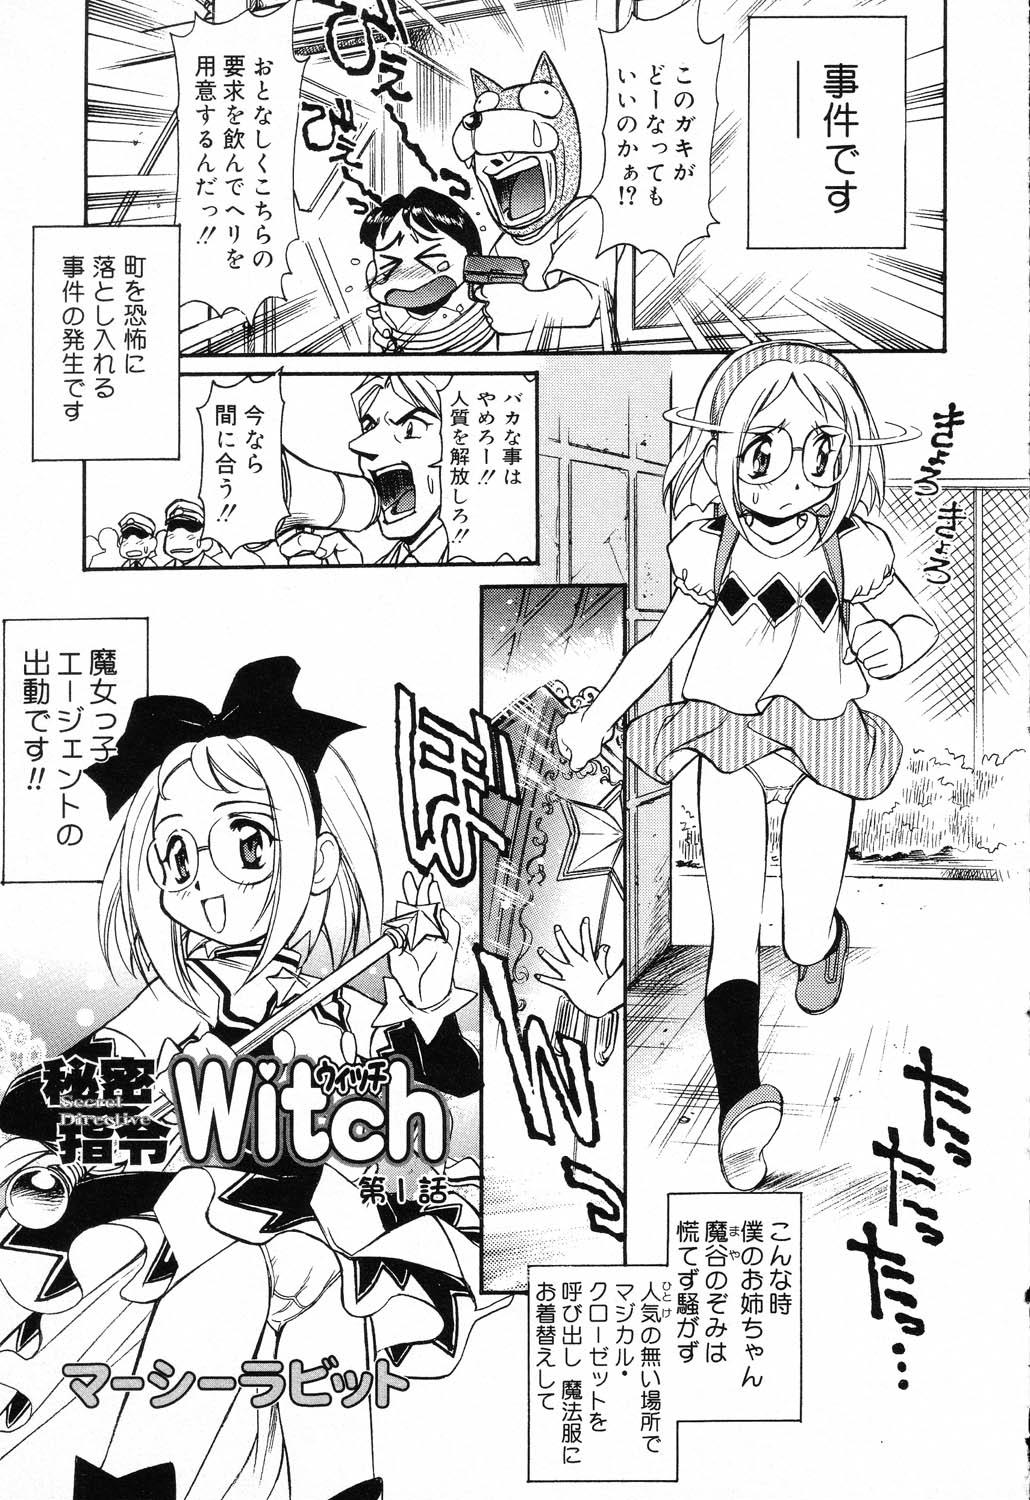 X Mitsu Shirei Witch 1-9 66